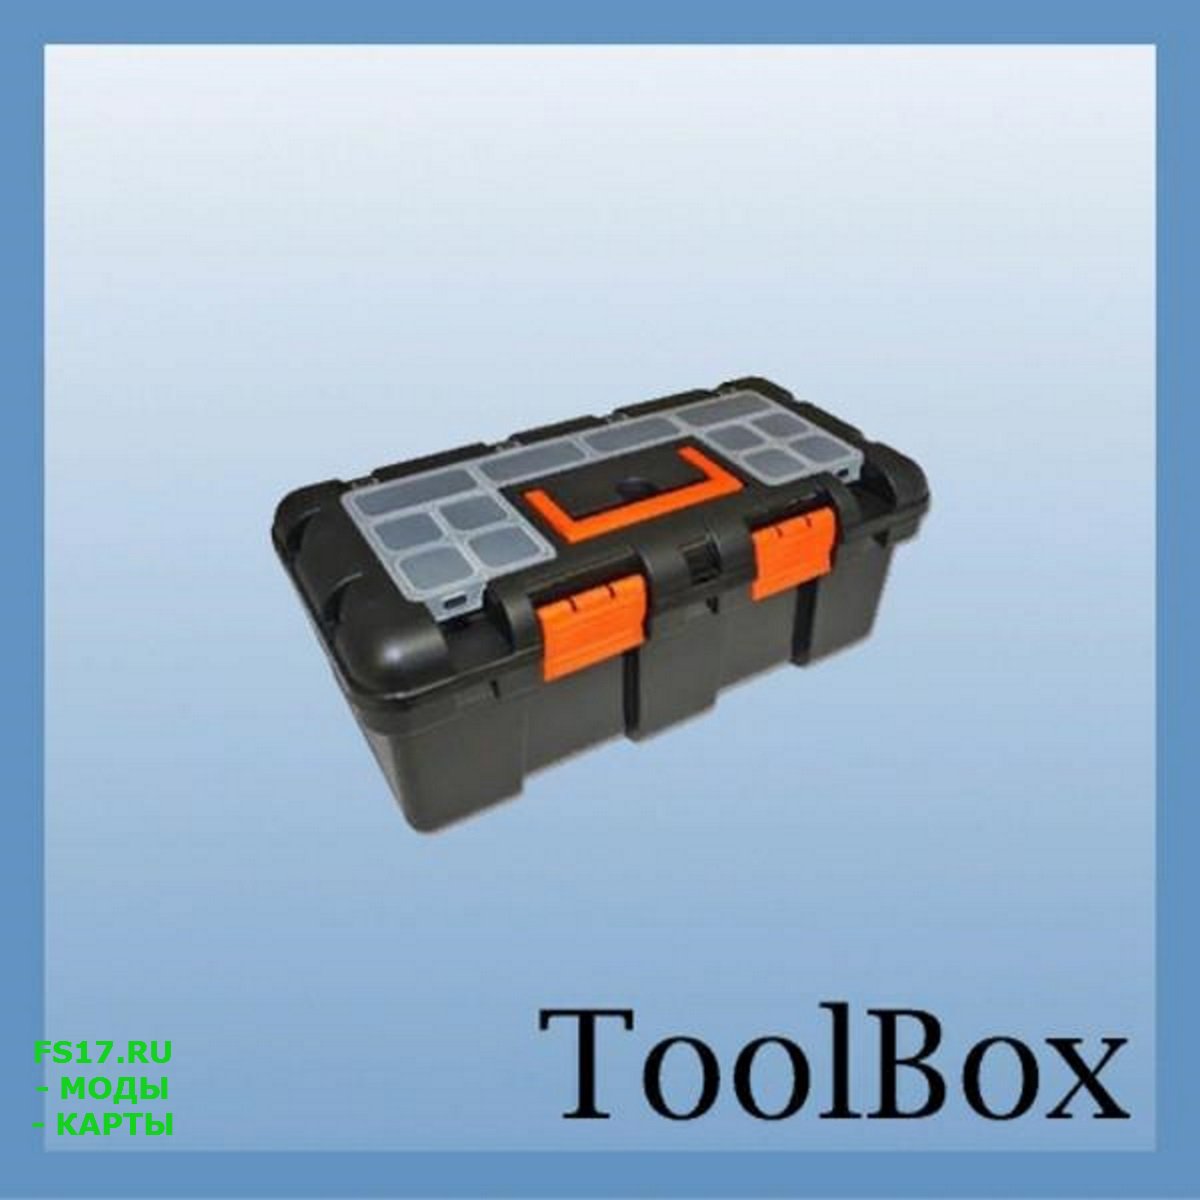 Toolbox mod. ФС 19 ремонтный ящик. ФС 19 ящик с инструментами. Переносной ящик с инструментами для ФС 19. Ящик с инструментами переносной для Farming Simulator 2019.